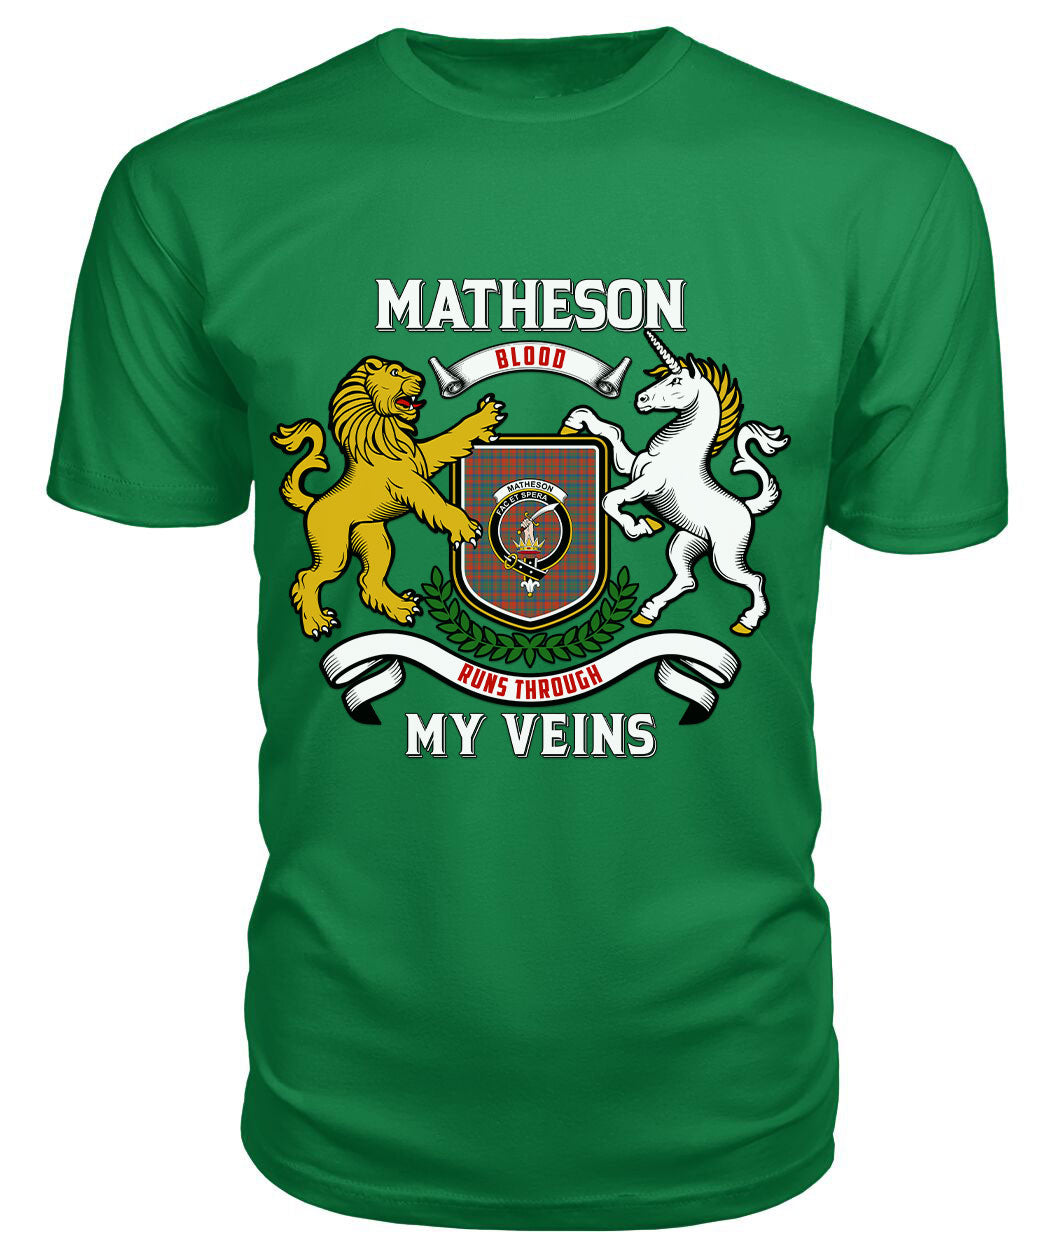 Matheson Ancient Tartan Crest 2D T-shirt - Blood Runs Through My Veins Style